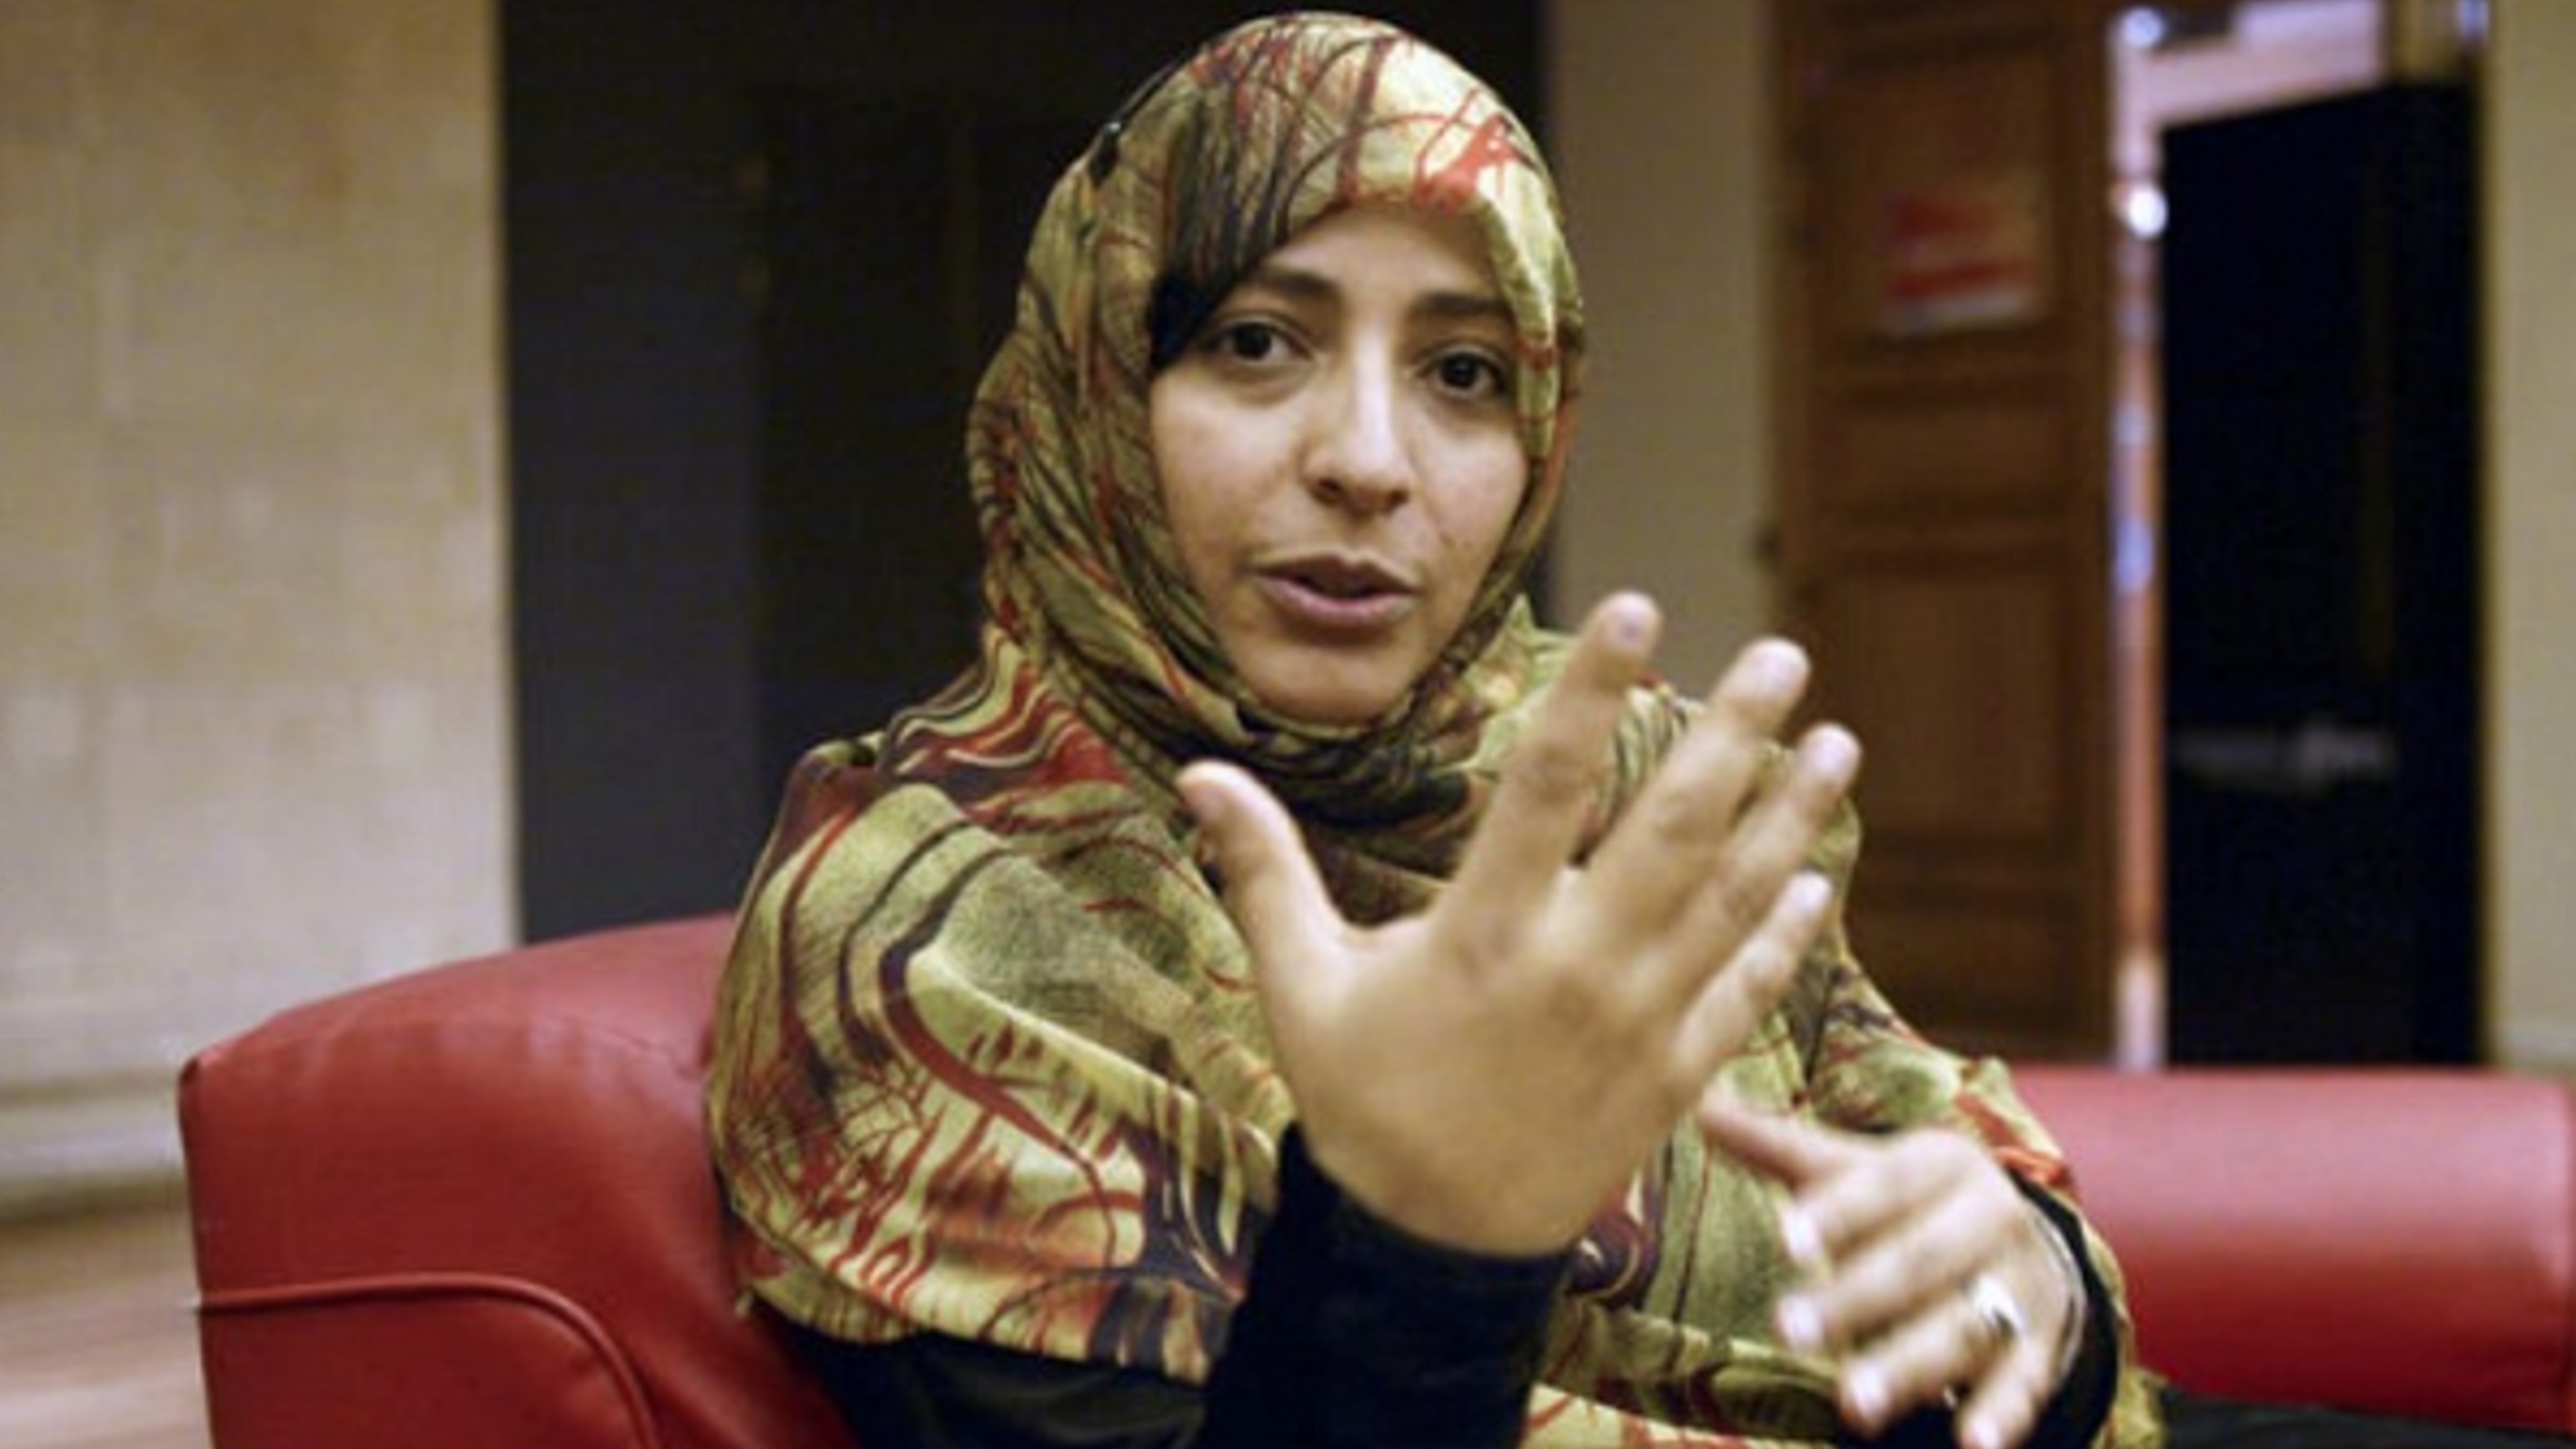 حوار الناشطة الحائزة على جائزة نوبل للسلام توكل كرمان مع صحيفة العربي الجديد الصادرة في لندن